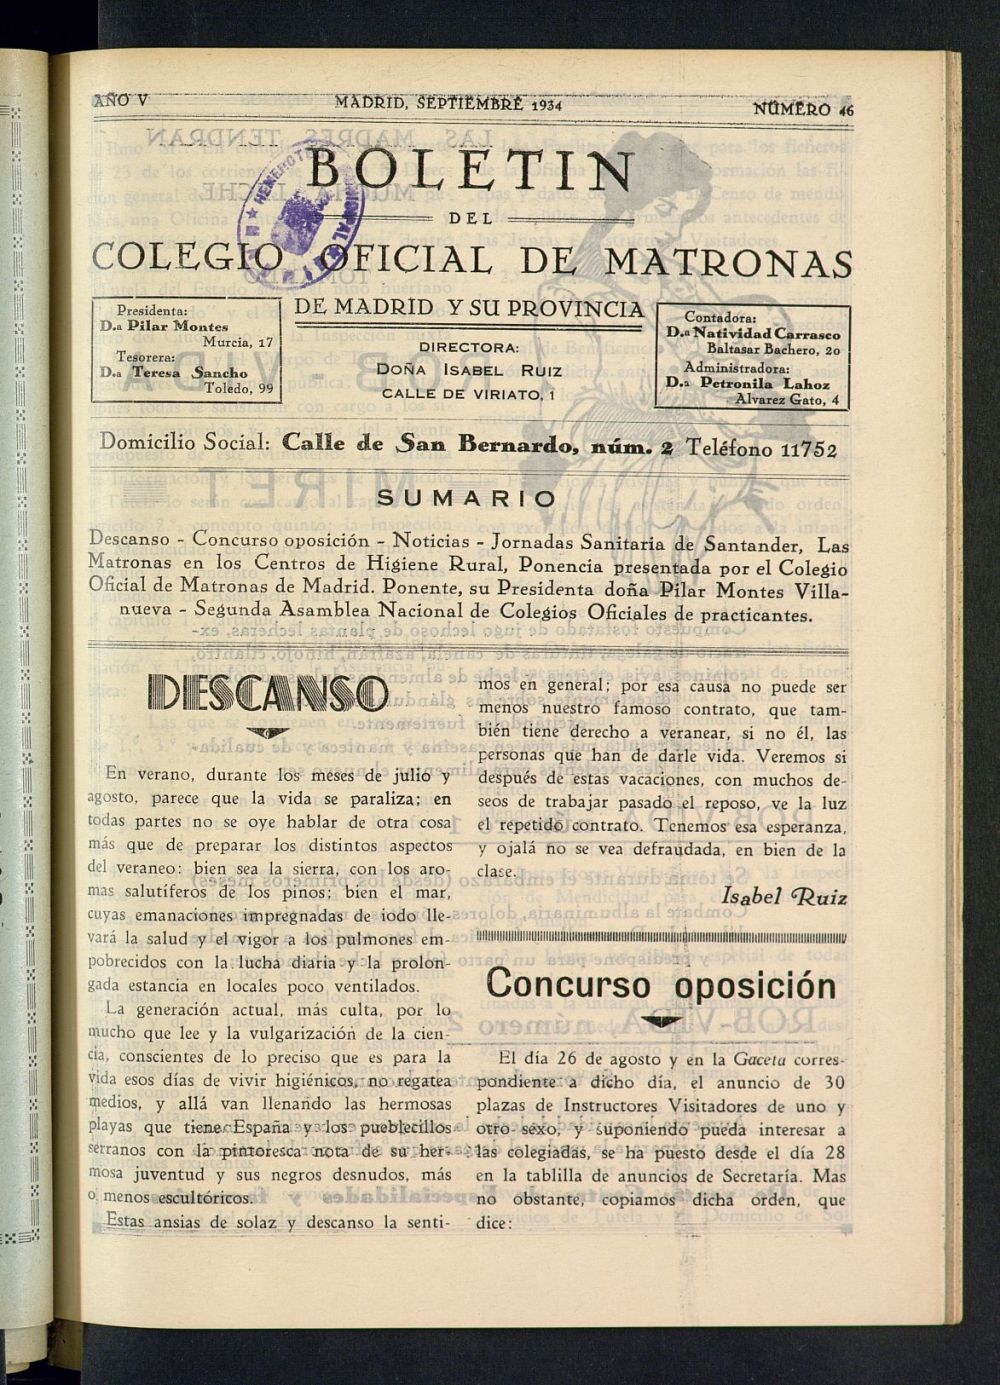 Boletn del Colegio Oficial de Matronas de Madrid y su Provincia de septiembre de 1934